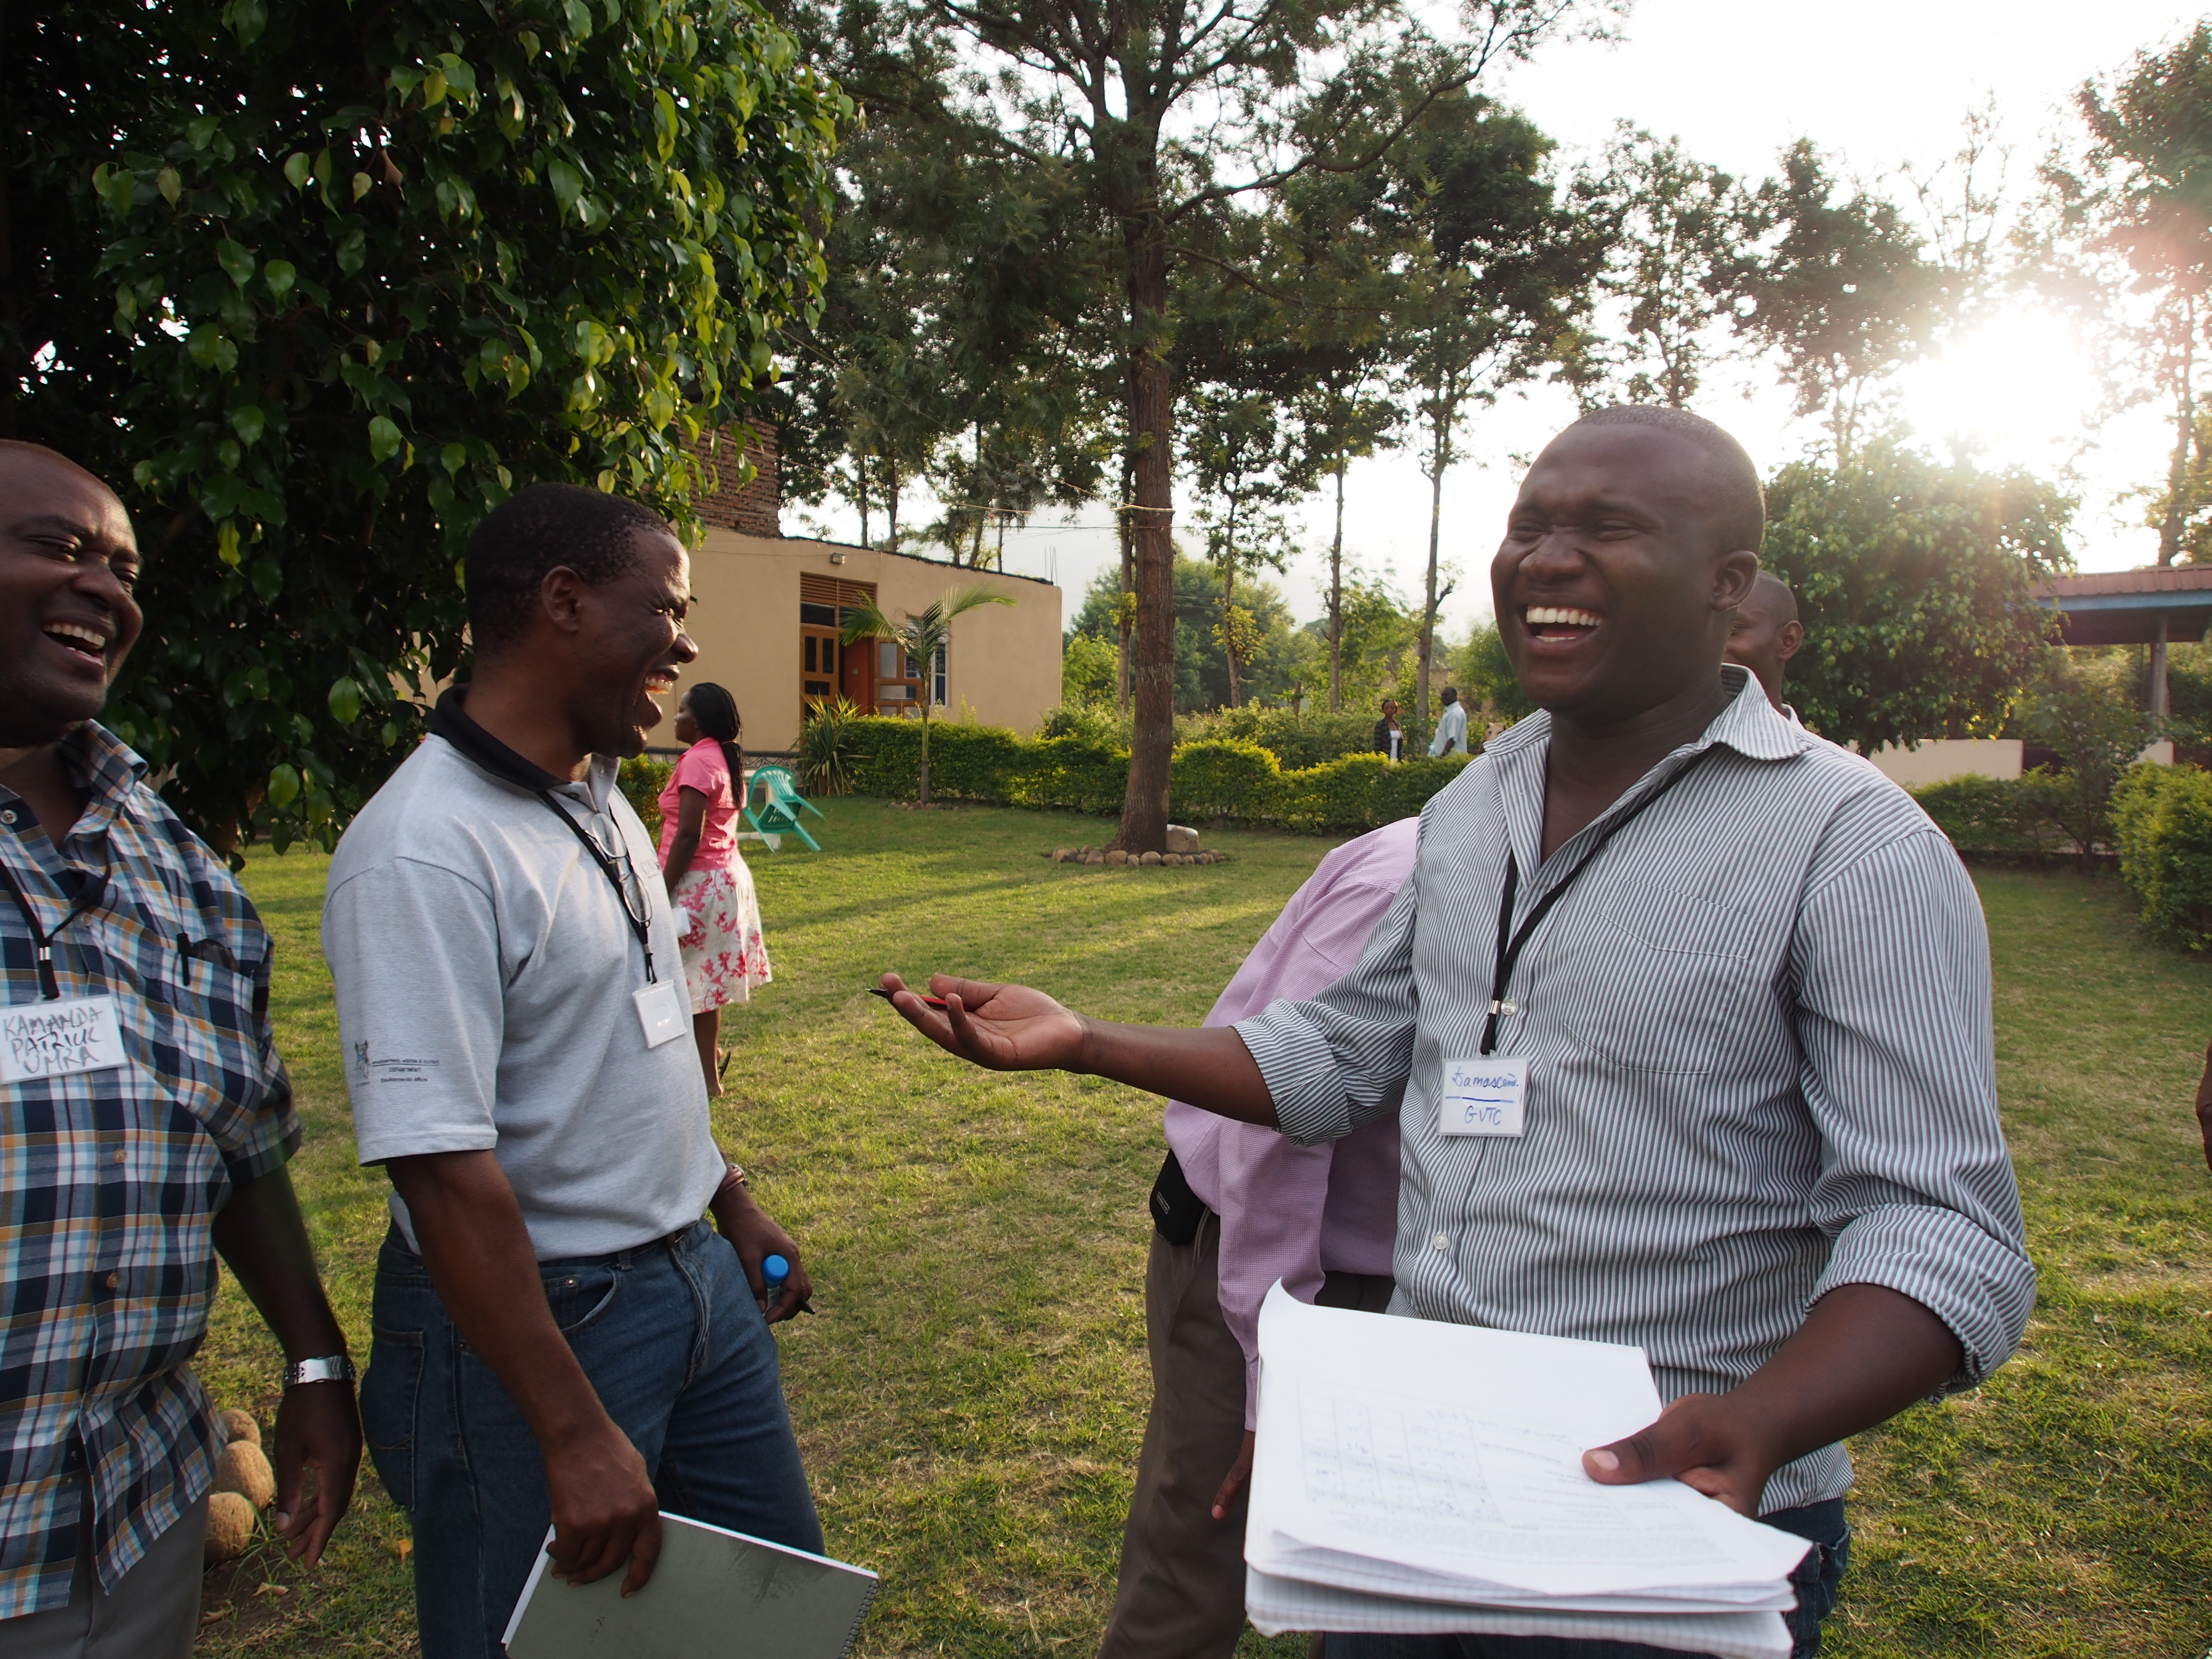 Image from a CSF Program in Uganda